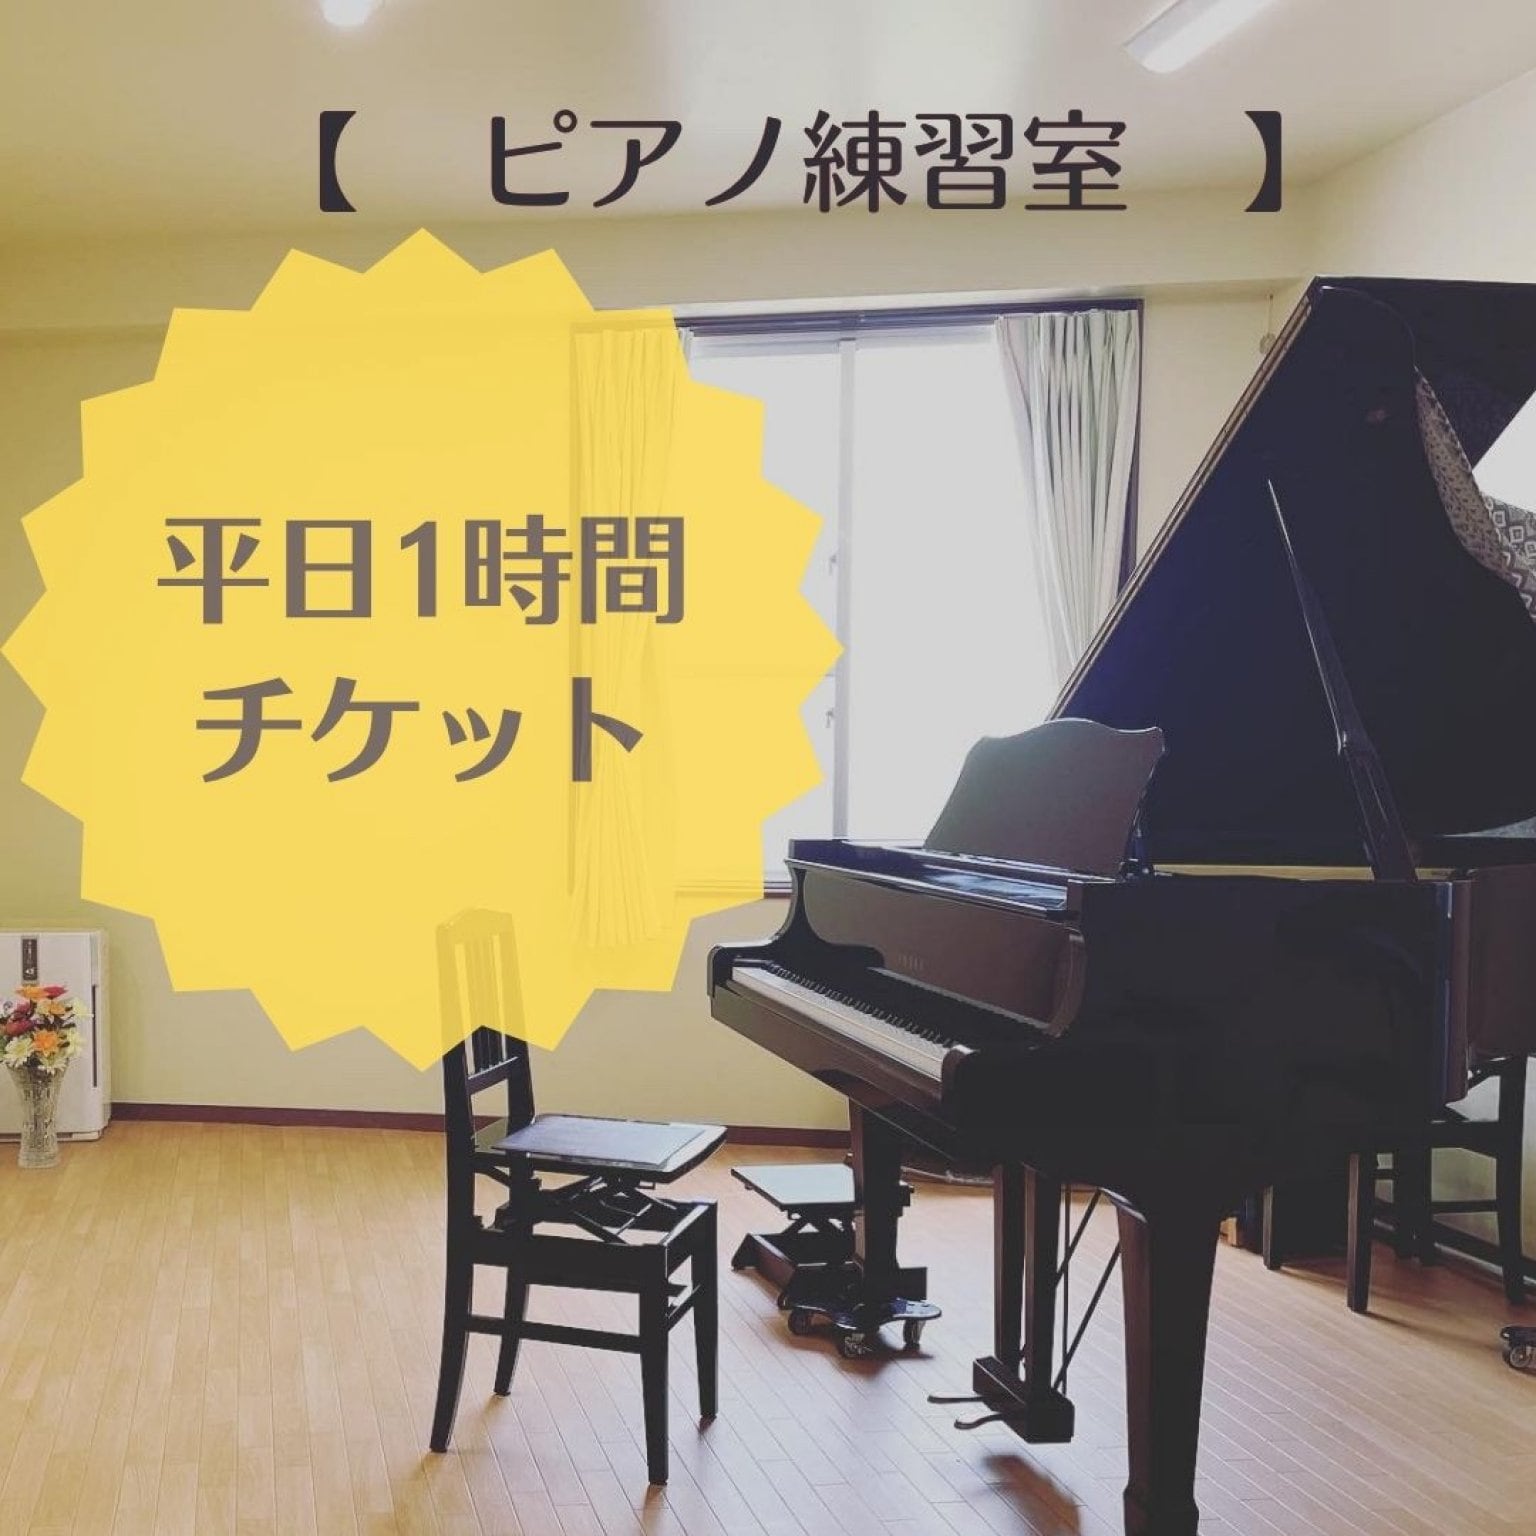 ピアノ練習室レンタル平日1時間チケット